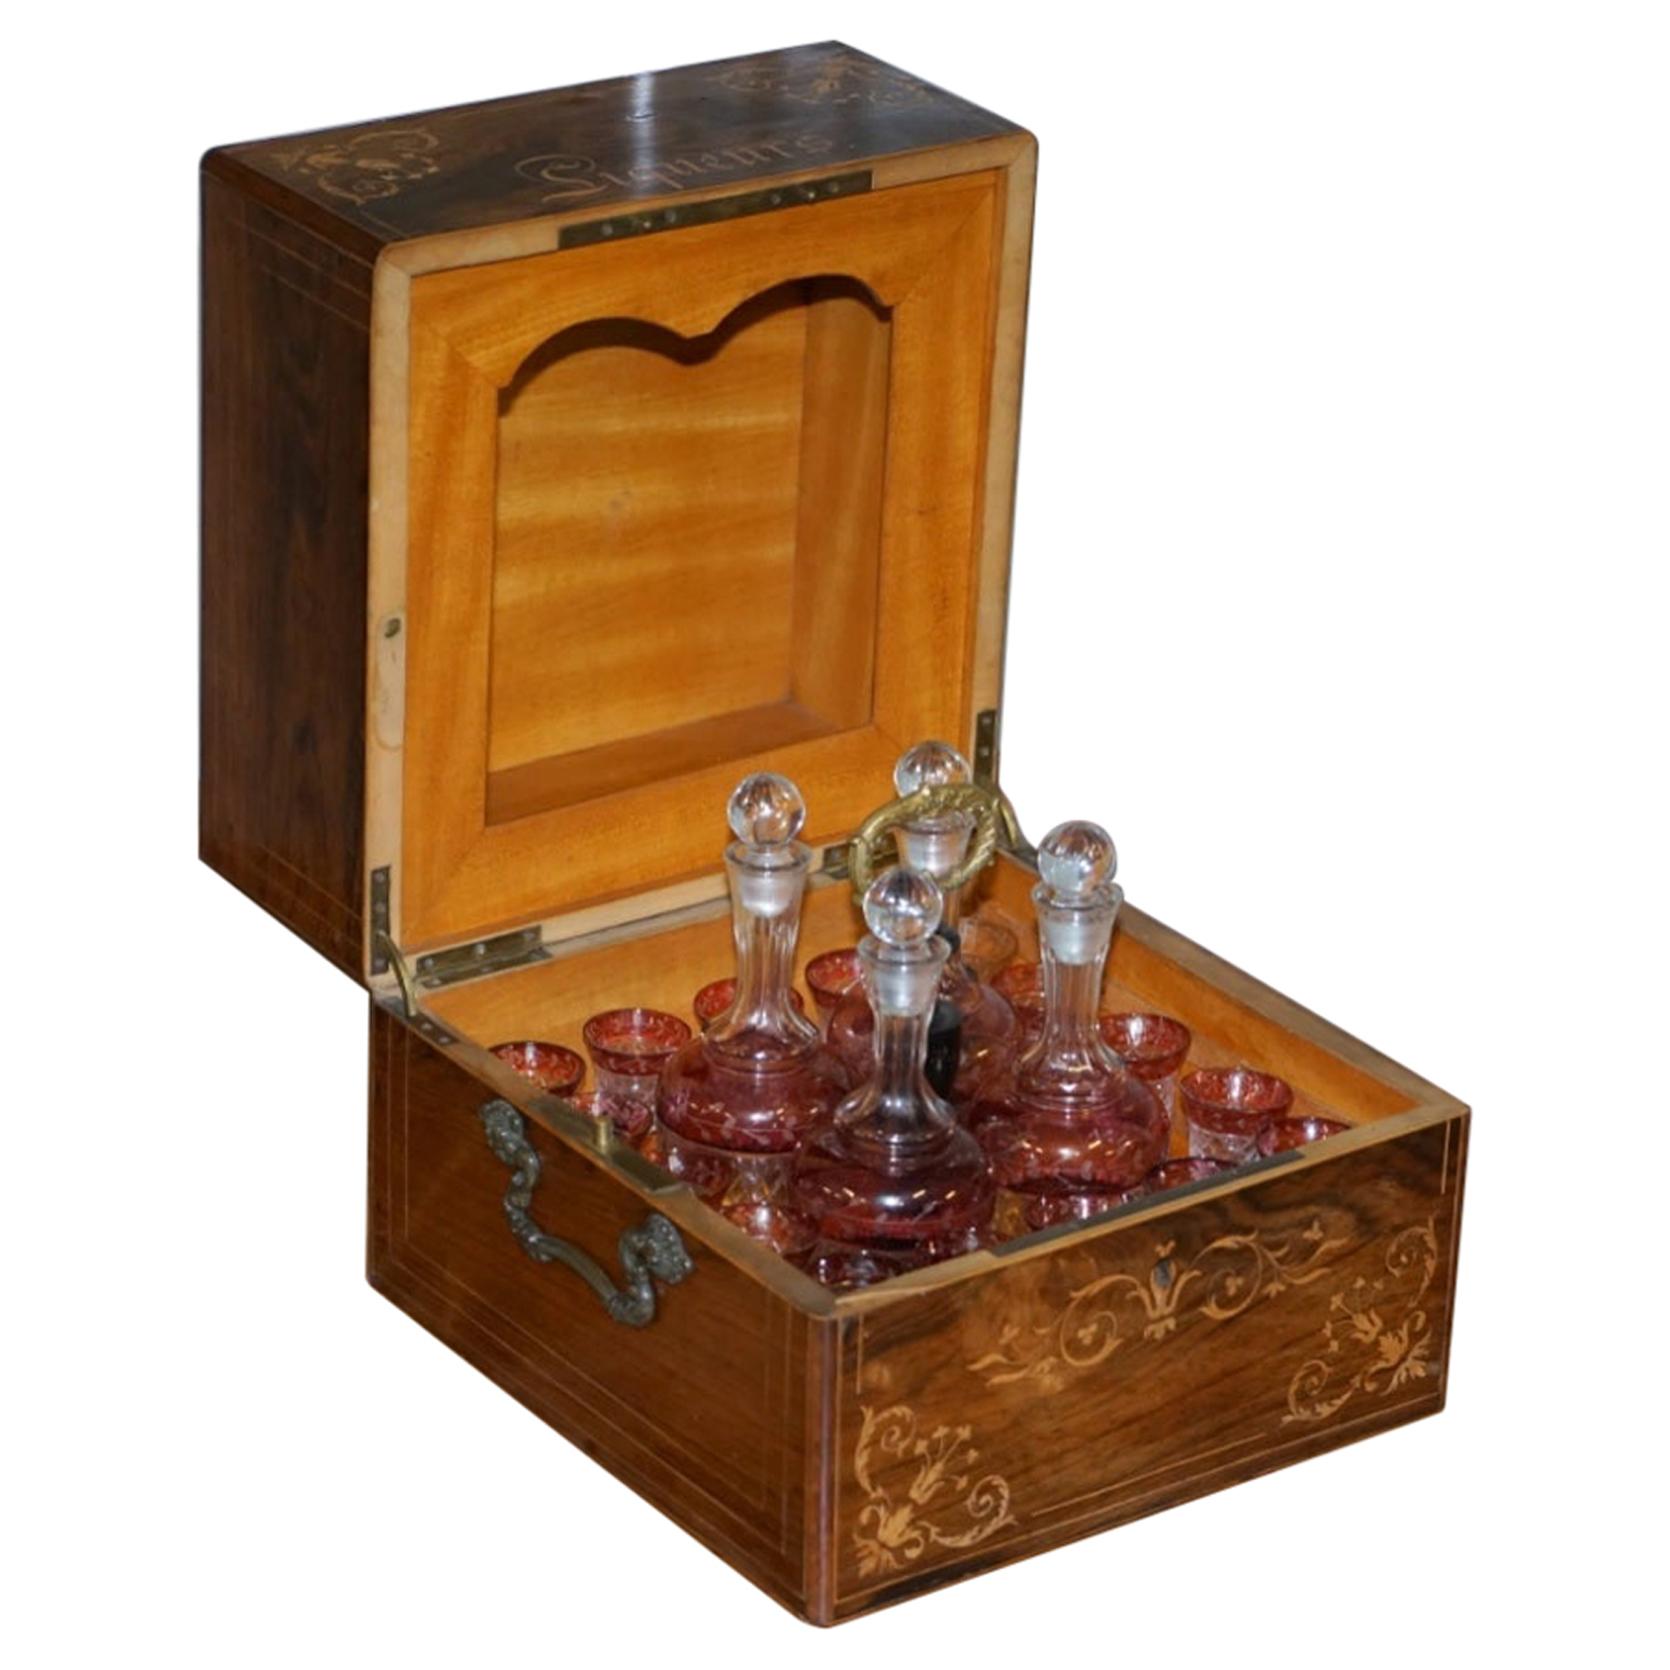 Très rare boîte à liqueur victorienne en bois dur avec verres à décanter en verre Cranberry